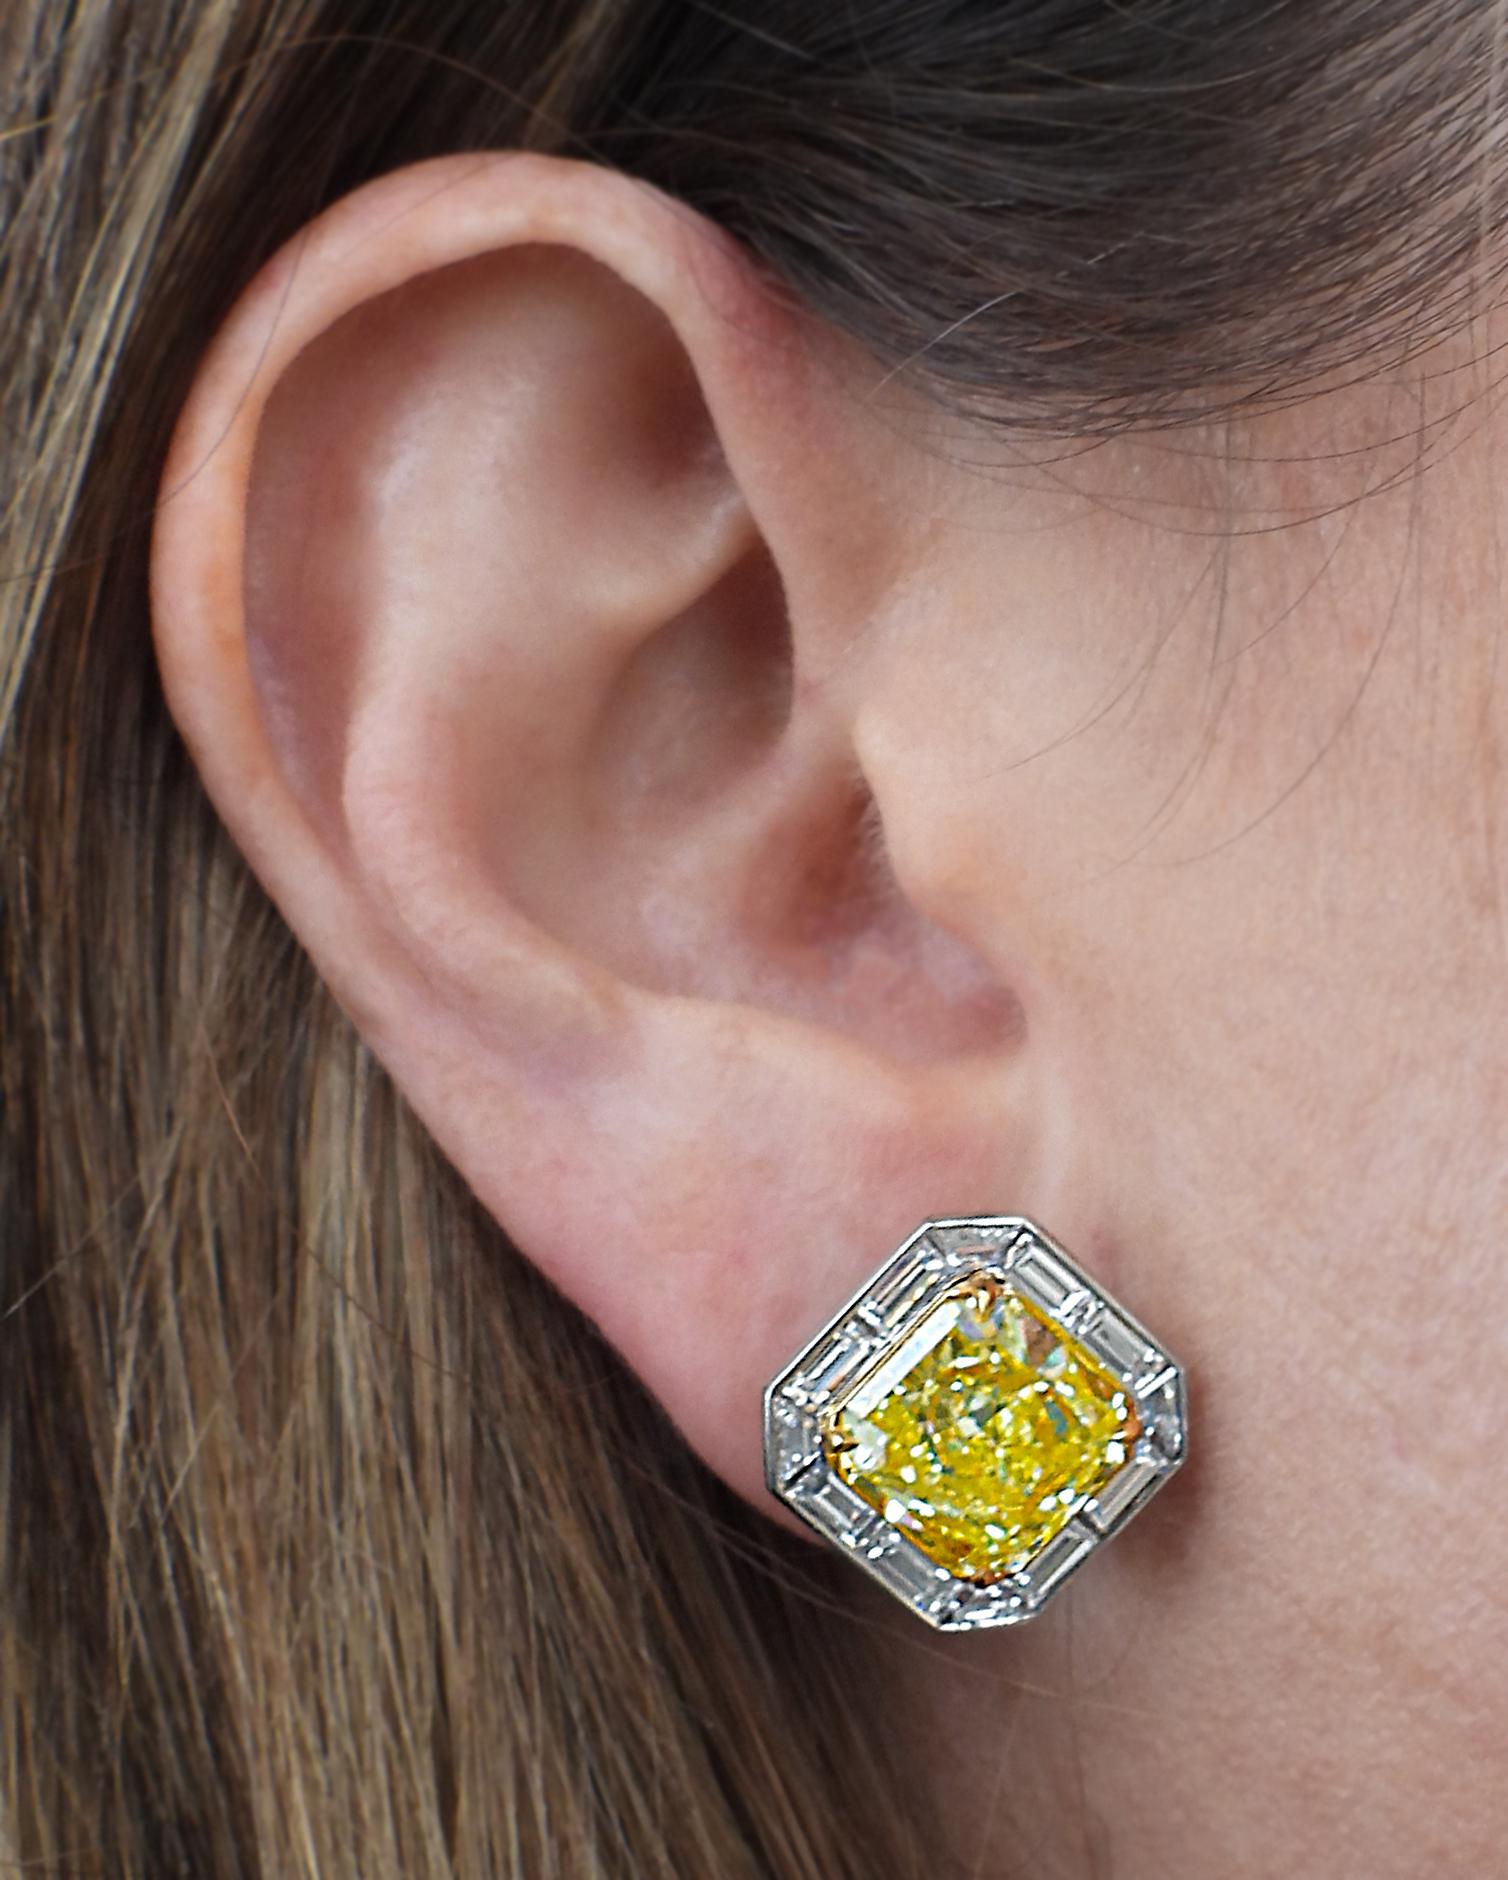 Radiant Cut Vivid Diamonds GIA Certified 10.61 Carat Fancy Intense Yellow Diamond Earrings For Sale